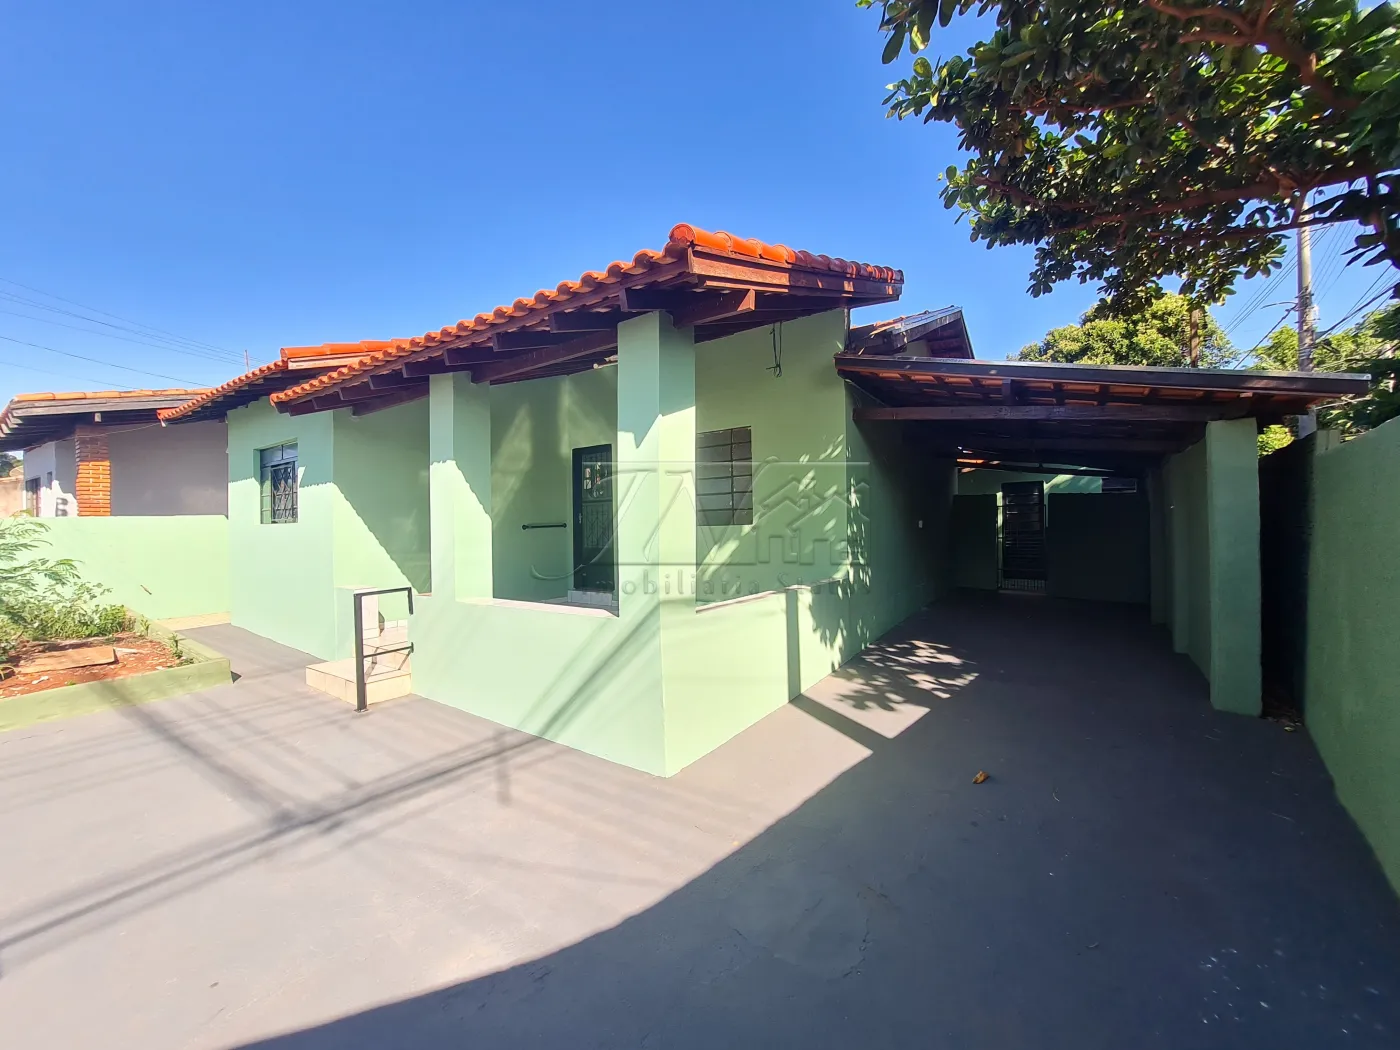 Alugar Residenciais / Casas em Santa Cruz do Rio Pardo R$ 1.000,00 - Foto 3